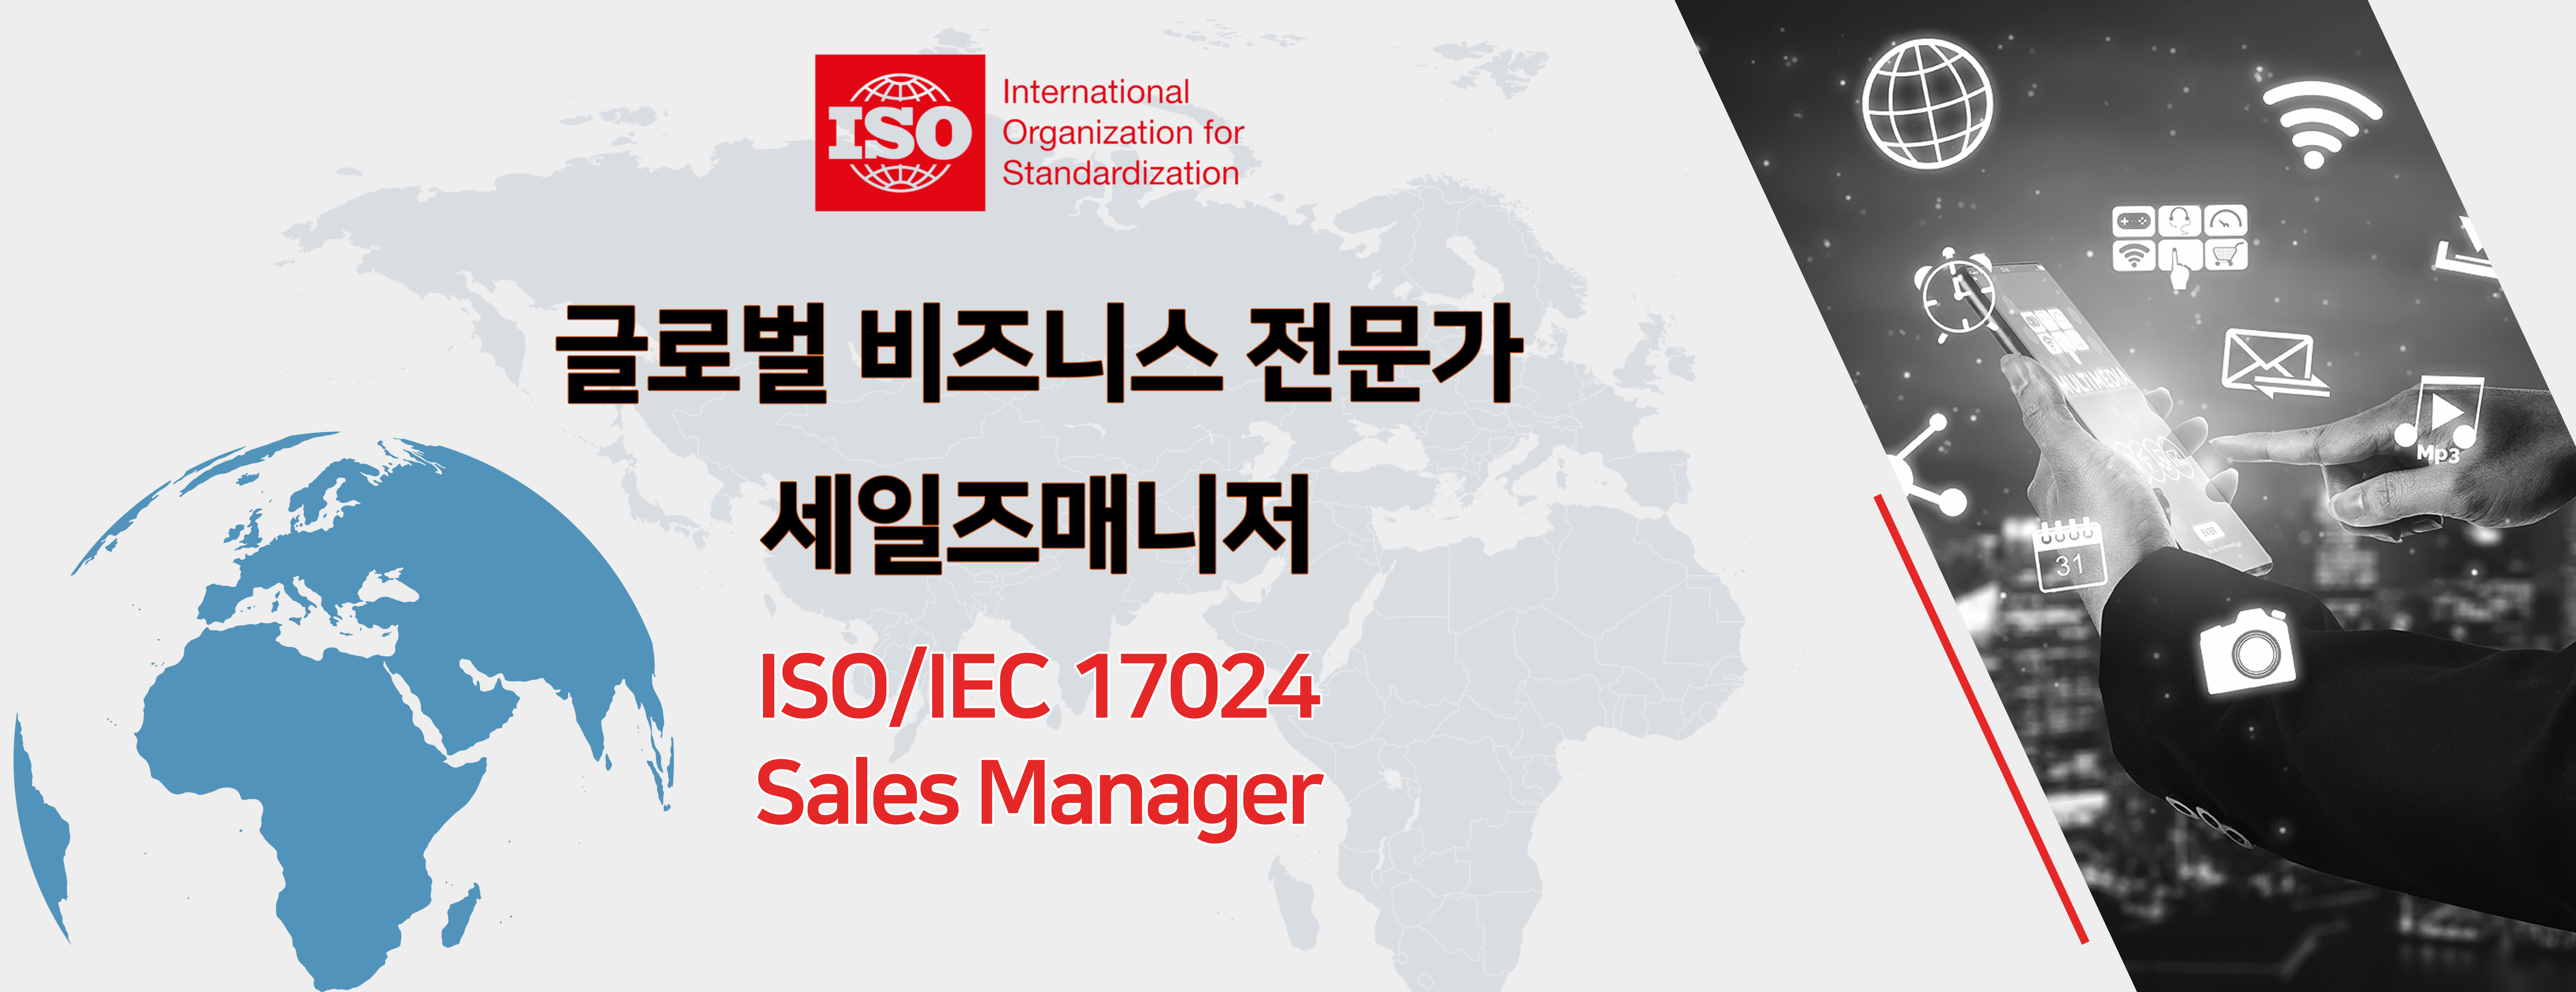 ISO/IEC17024 세일즈매니저 에이스 국제교육원